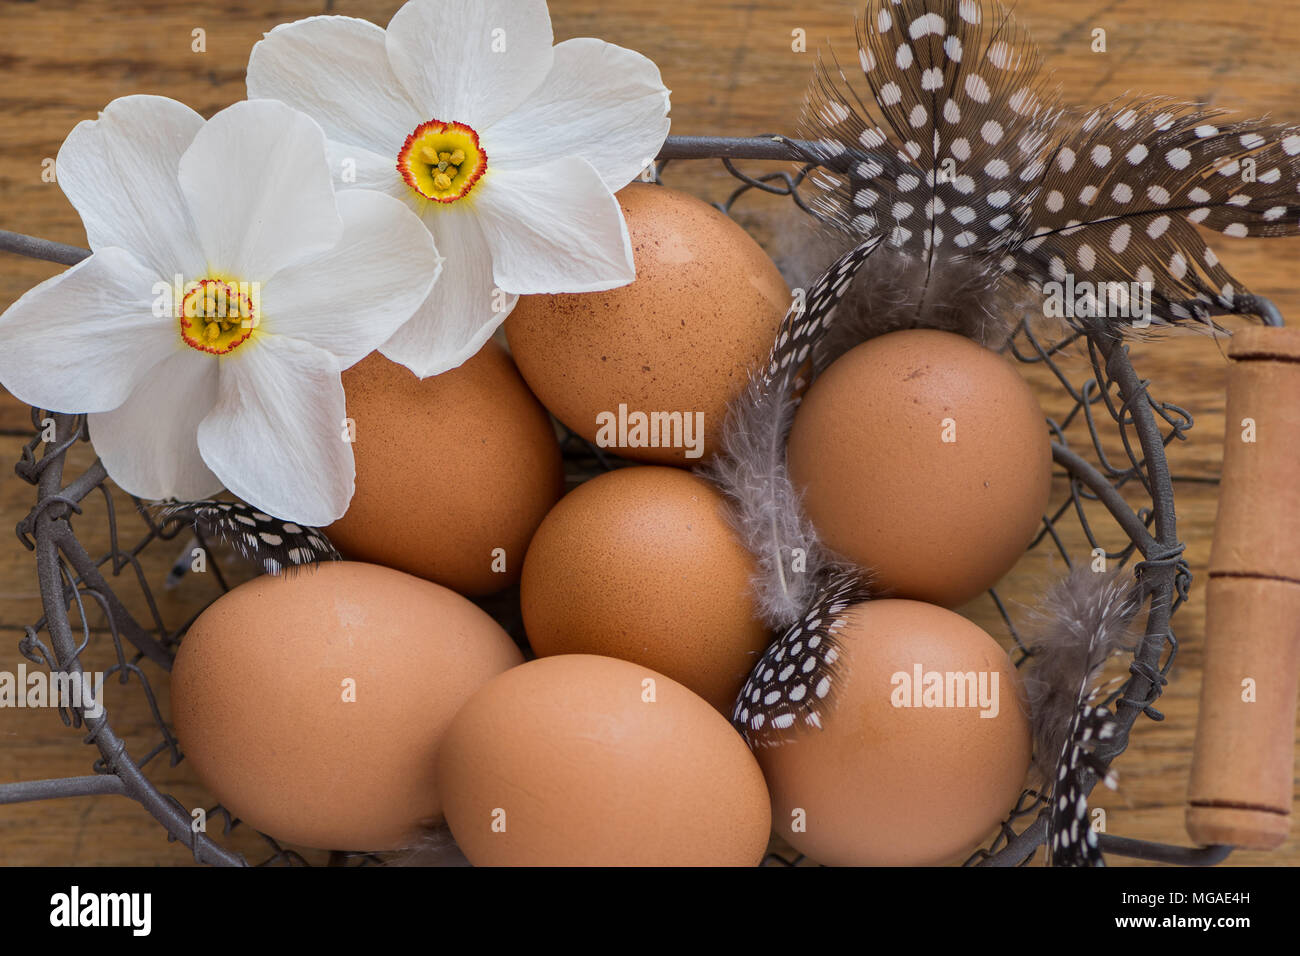 Brown huevos de gallina en una cesta Foto de stock